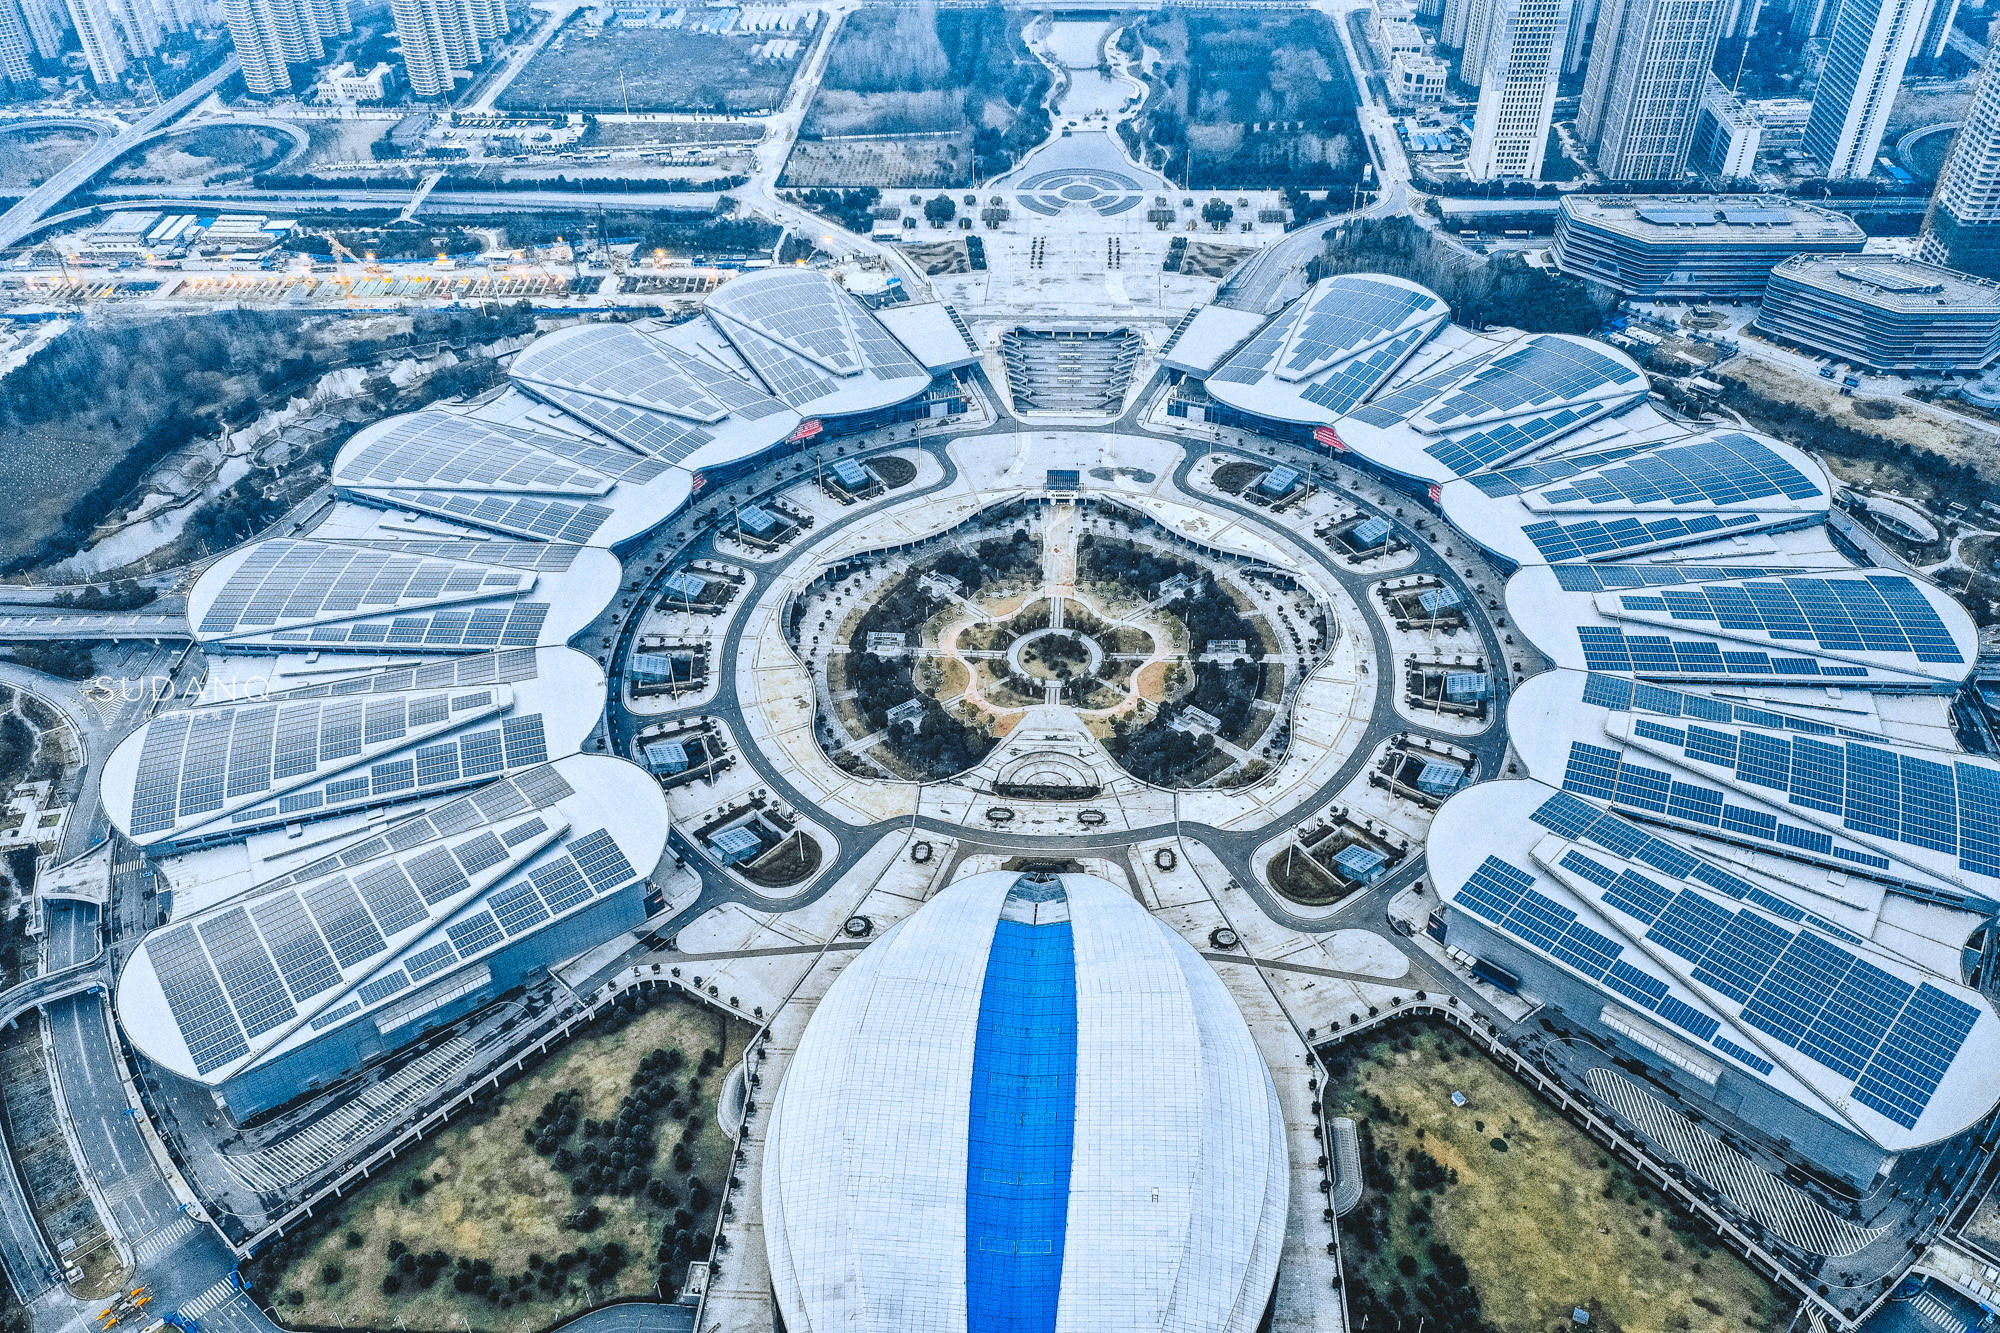 据资料显示,武汉国际博览中心是中部最大,全国第三的展览场馆,中心